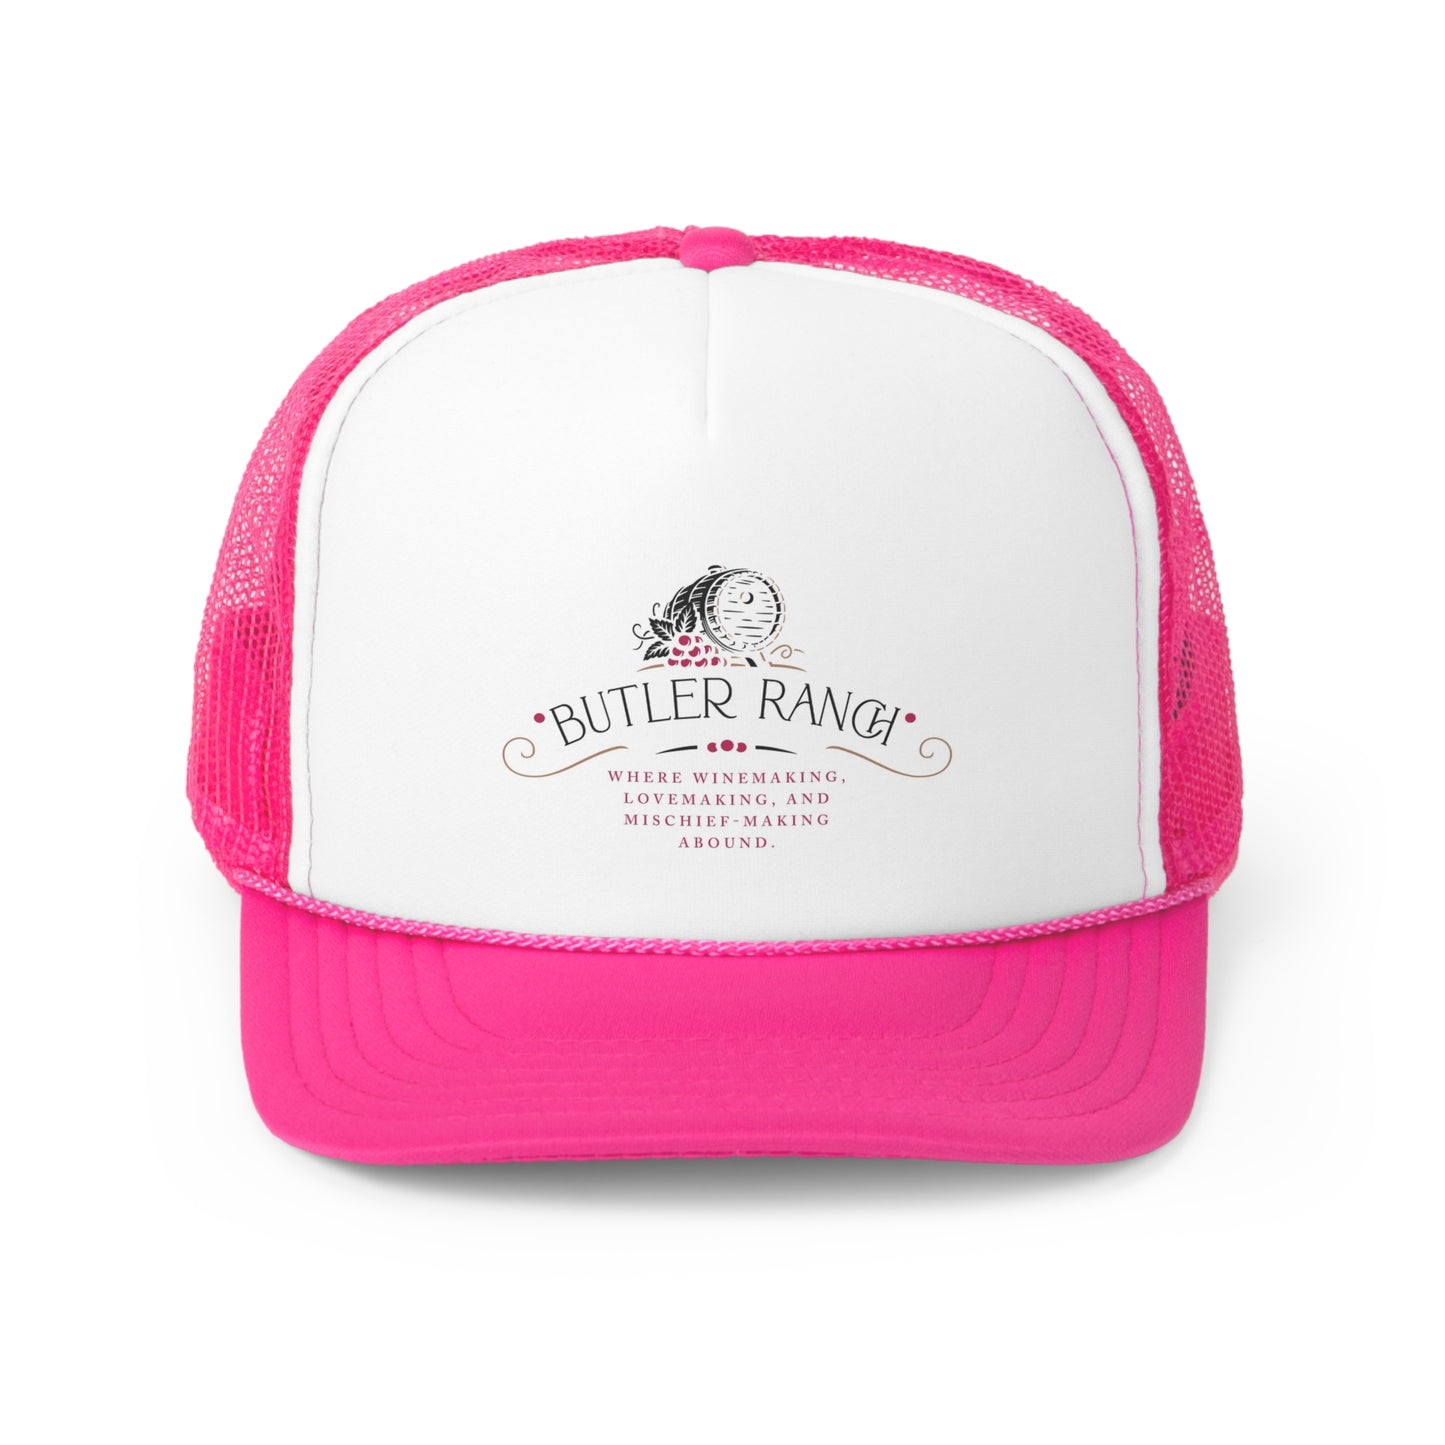 Butler Ranch Trucker Caps